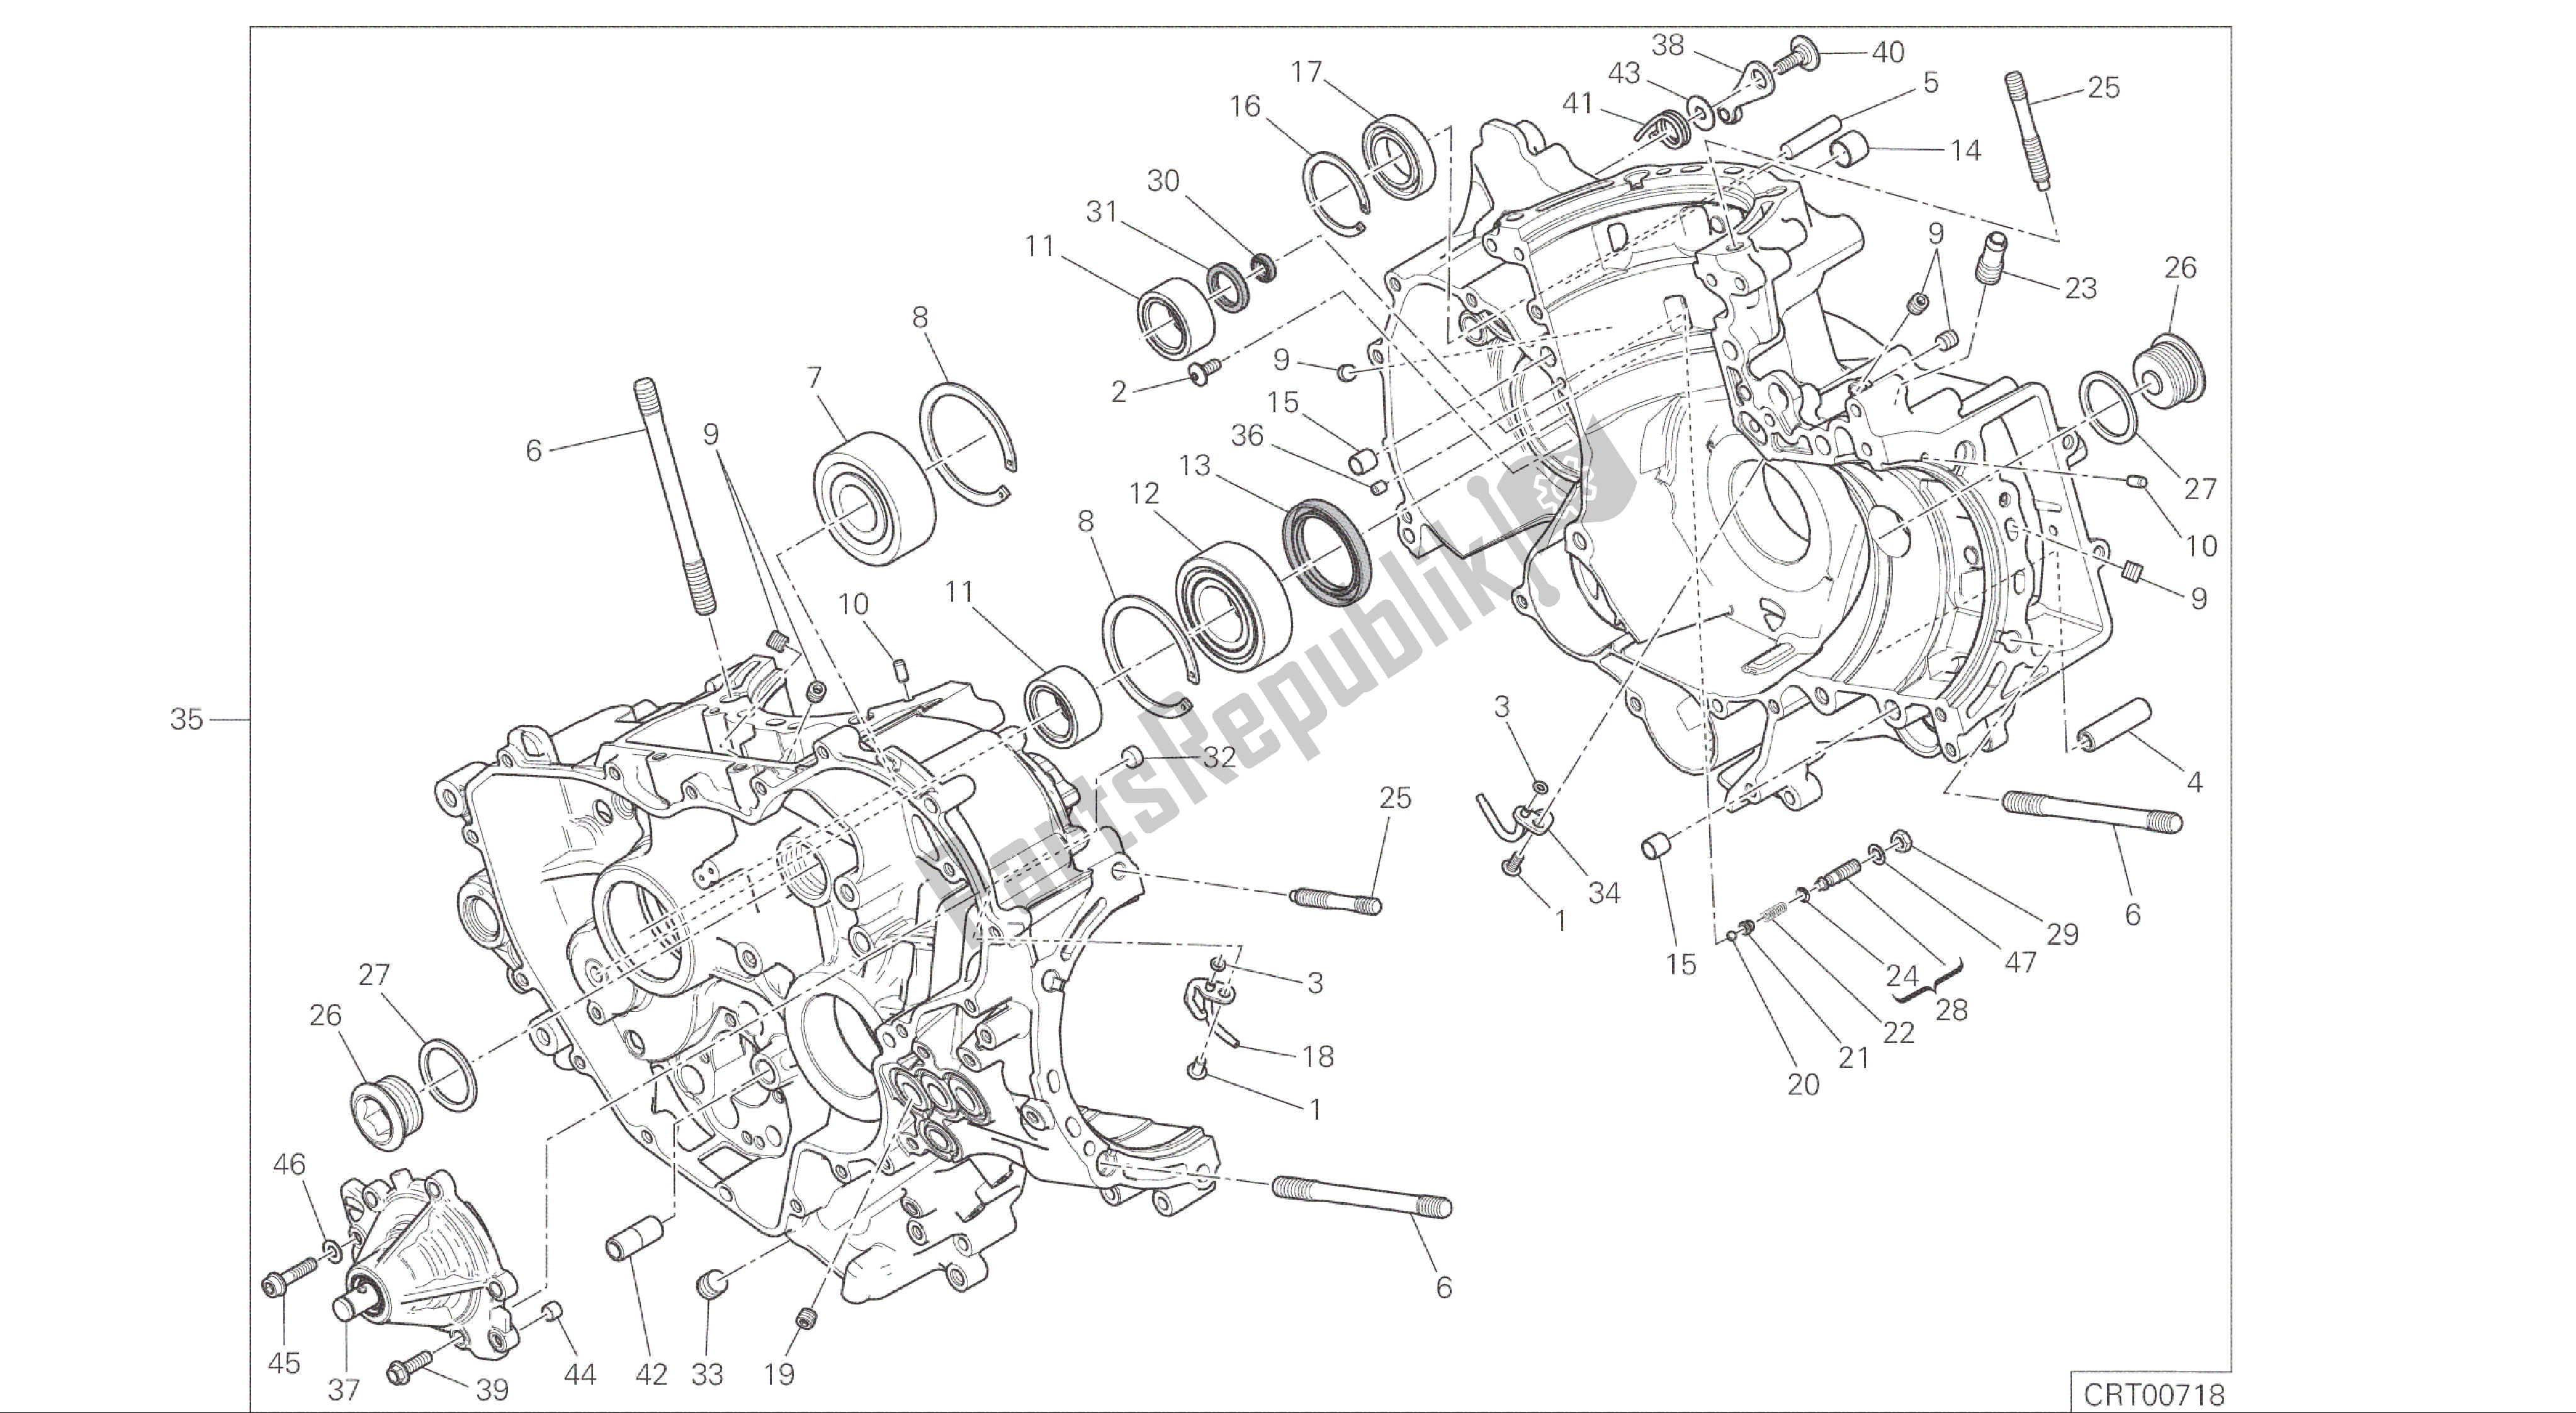 Alle onderdelen voor de Tekening 010 - Paar Halve Carters [mod: 1299; Xst: Aus, Eur, Fra, Jap, Twn] Groepsmotor van de Ducati Panigale ABS 1299 2016